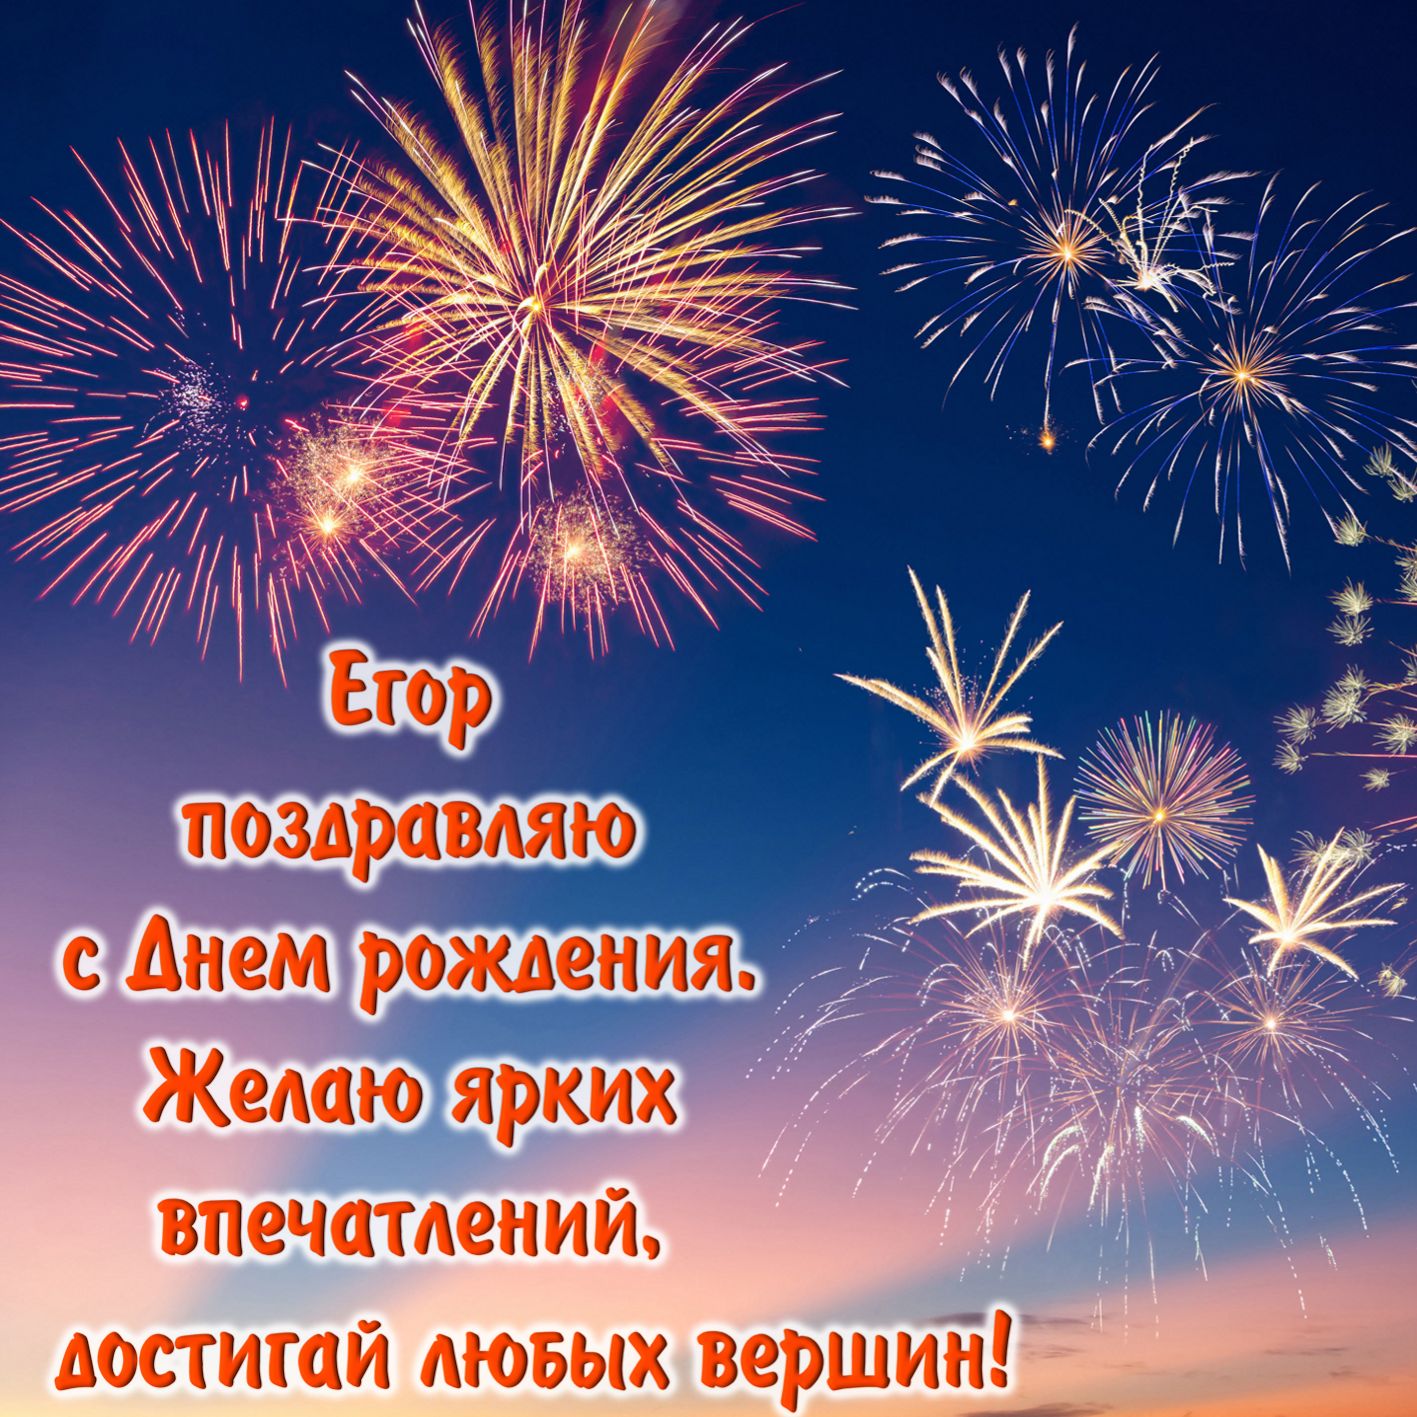 Открытка Егору - салют в ночном небе и поздравление на День рождения